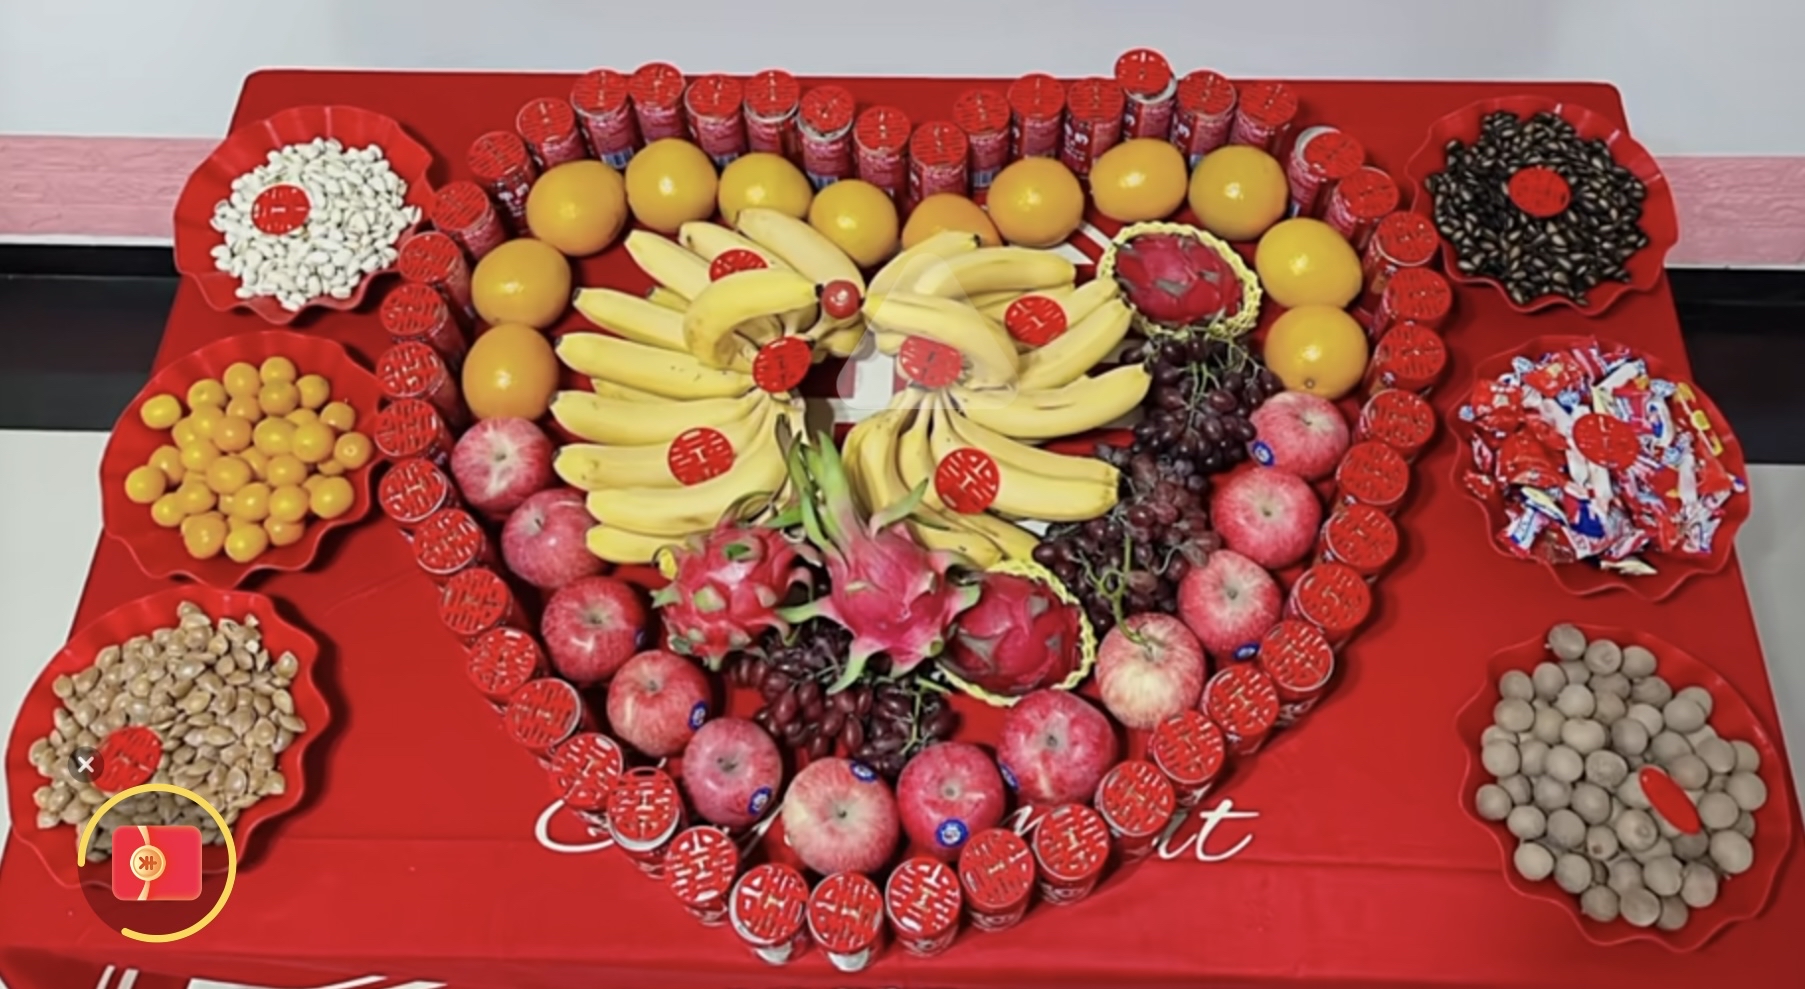 水果在结婚摆盘中很常见,如苹果,柑橘,石榴,西瓜等